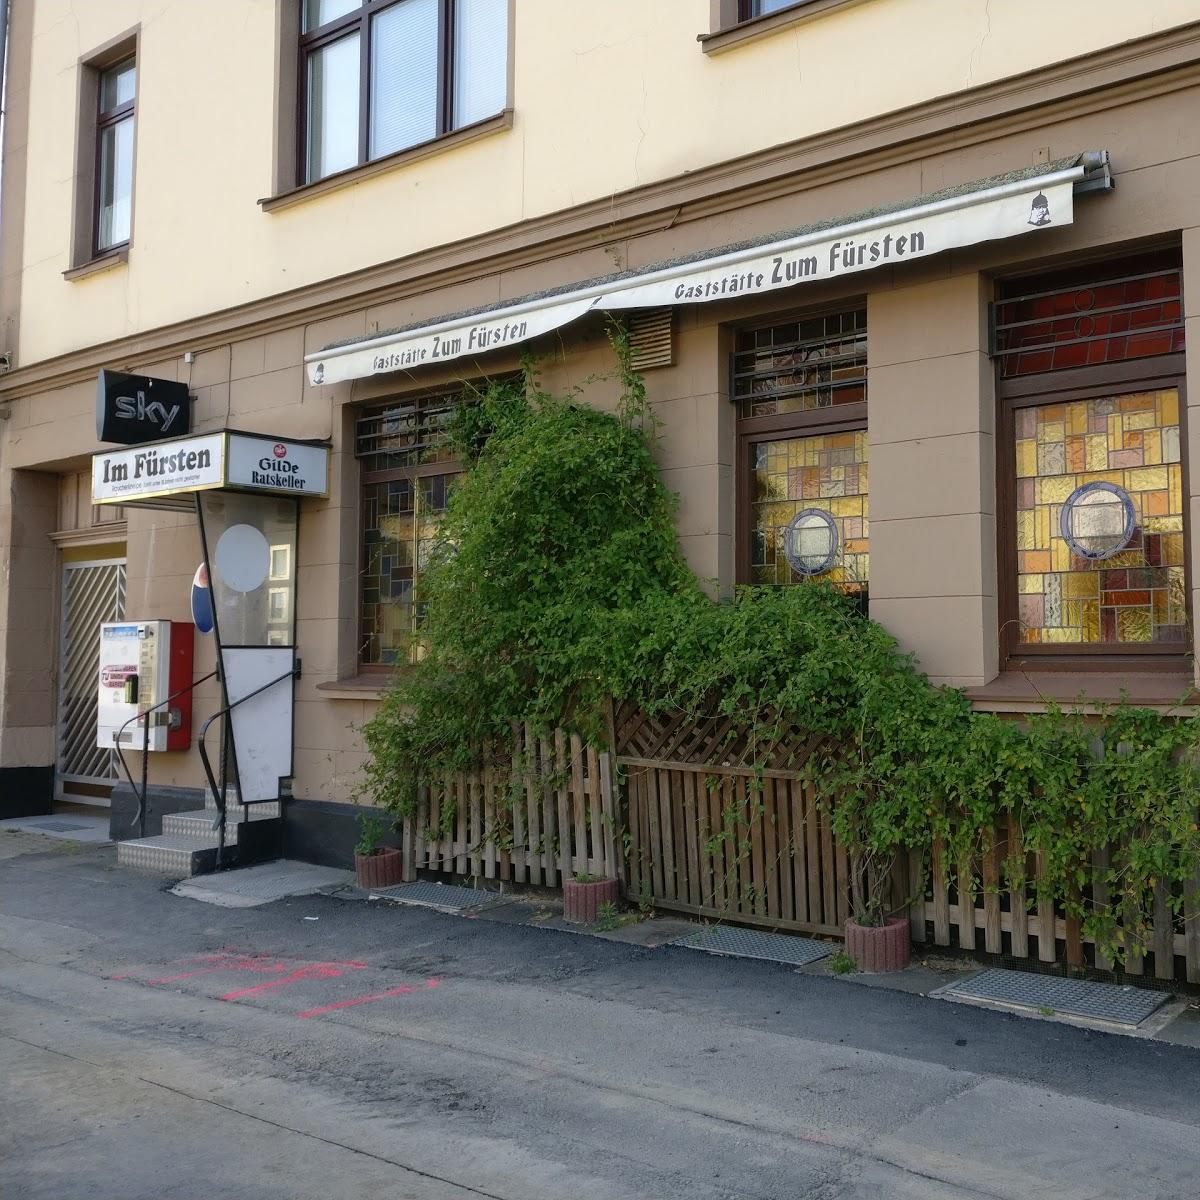 Restaurant "Zur Fürstin" in Hannover